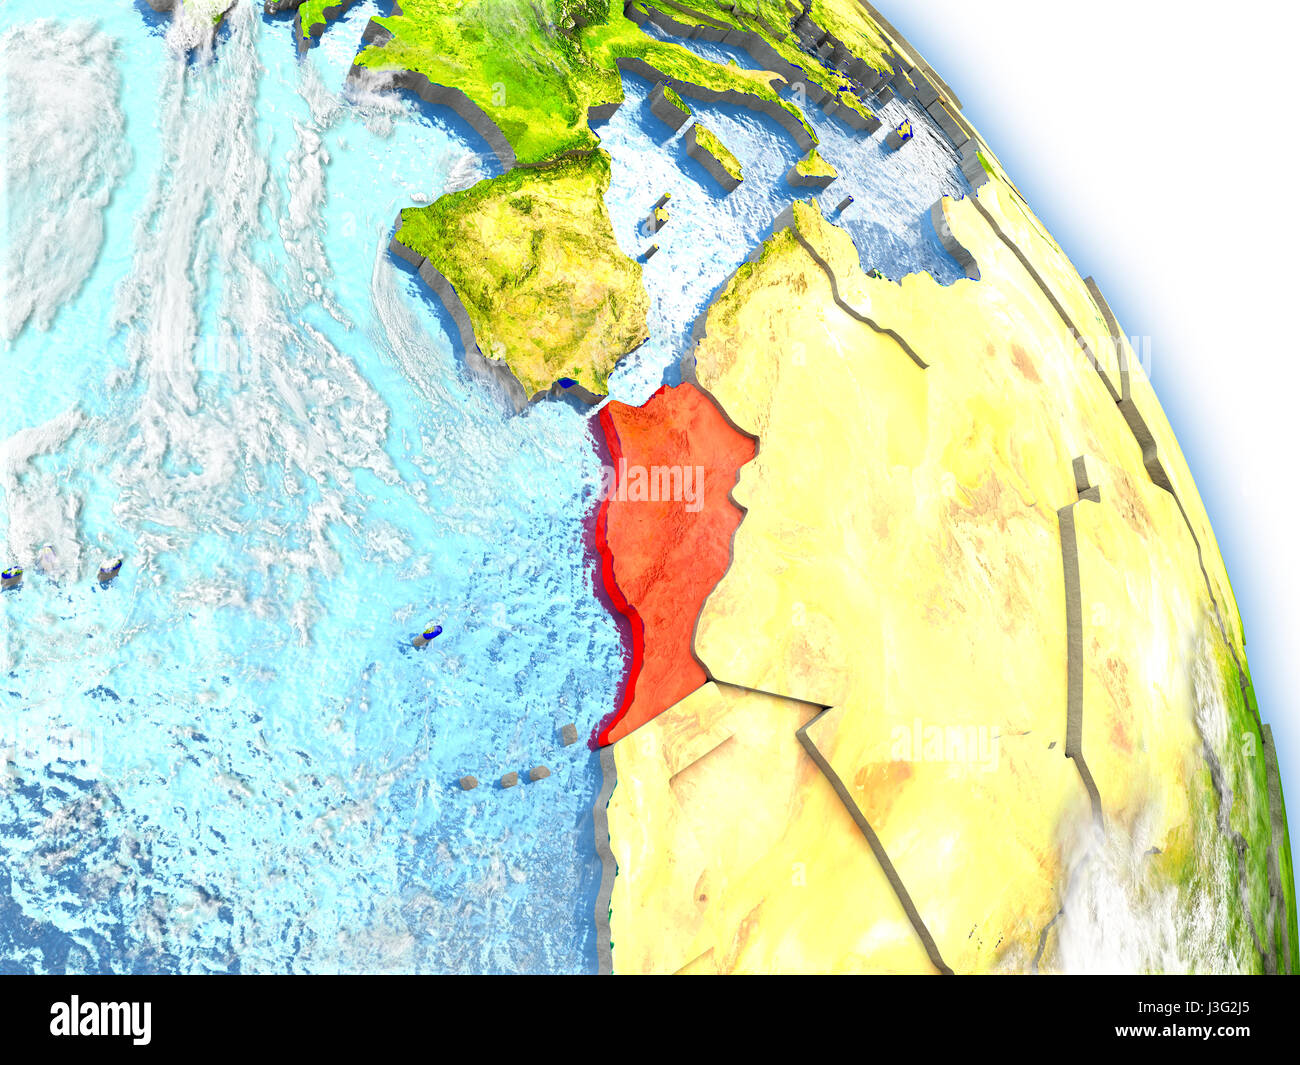 Moroccoin couleur rouge sur le modèle de la Terre. Illustration 3D détaillés avec surface de la planète, des nuages, et à l'image de l'océan. Éléments de cette image é Banque D'Images